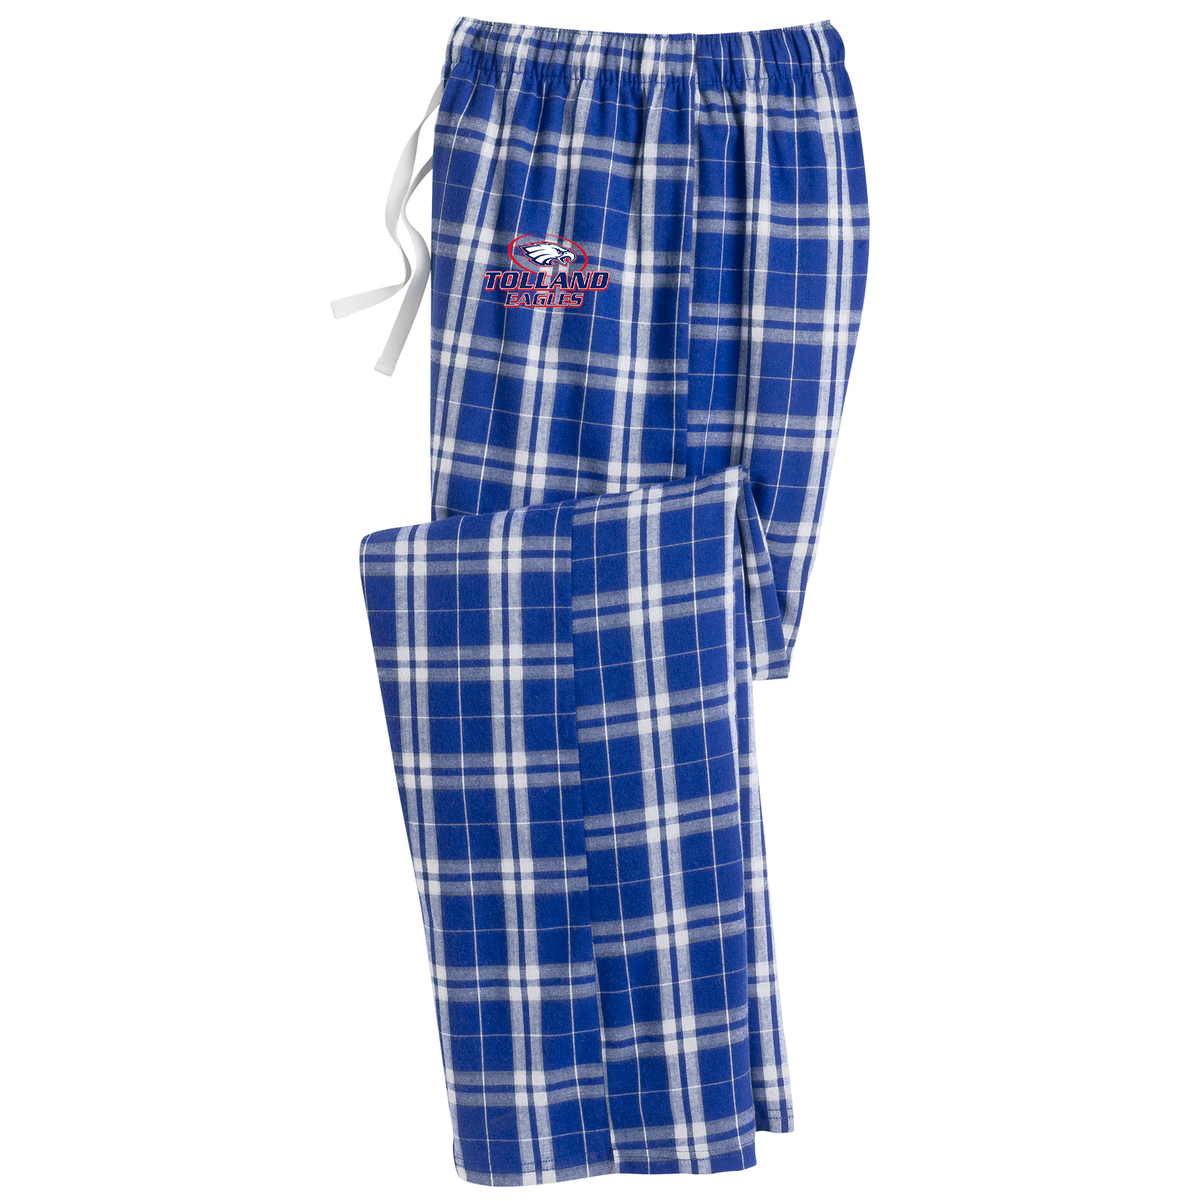 Tolland Football Plaid Pajama Pants